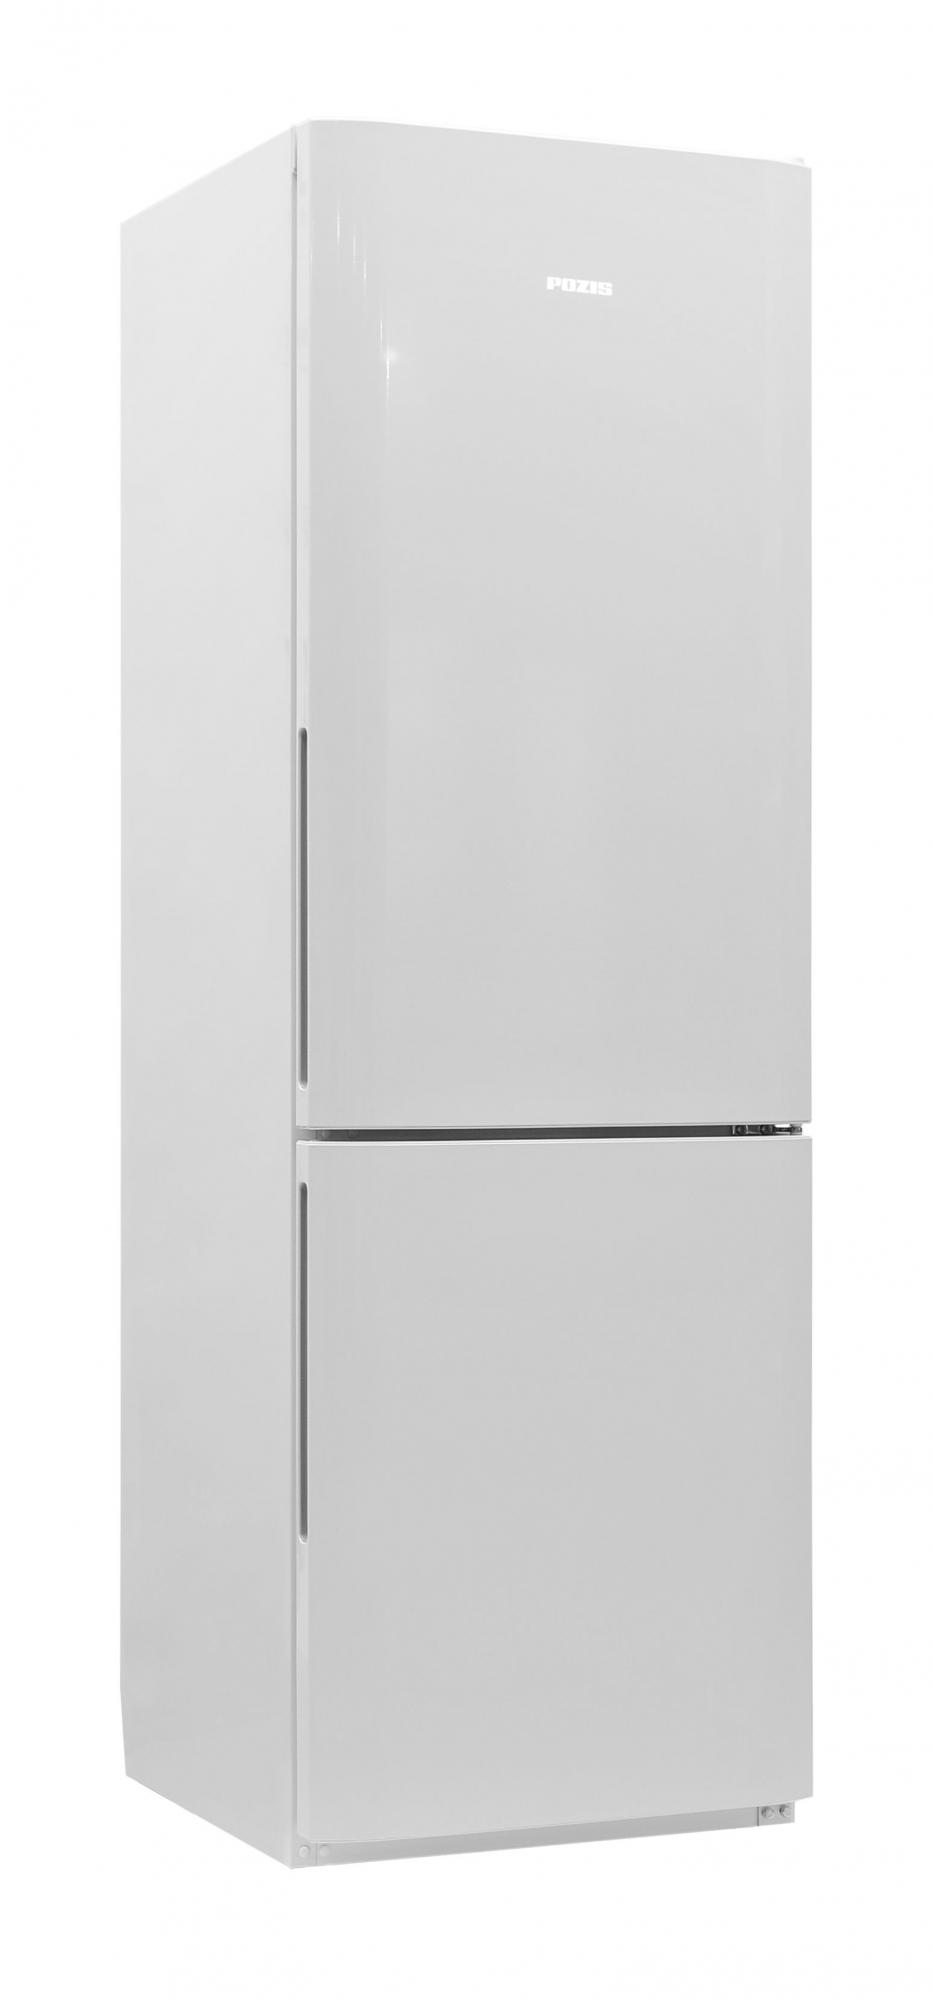 Холодильник POZIS RK FNF 170 W Верт. ручки																		 — описание, фото, цены в интернет-магазине Премьер Техно